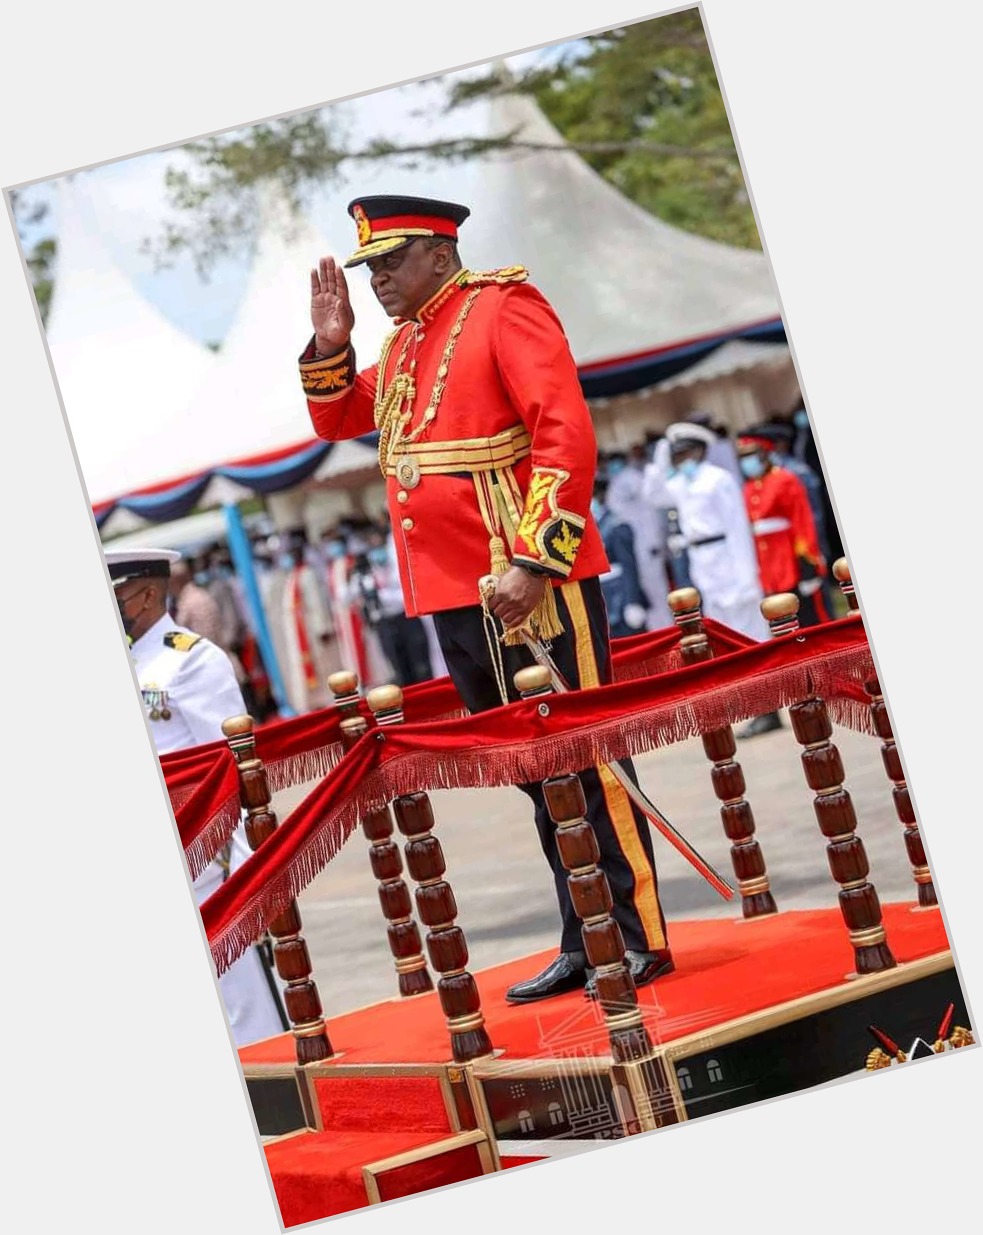 Happy birthday His Excellency Mr President Uhuru Kenyatta. 